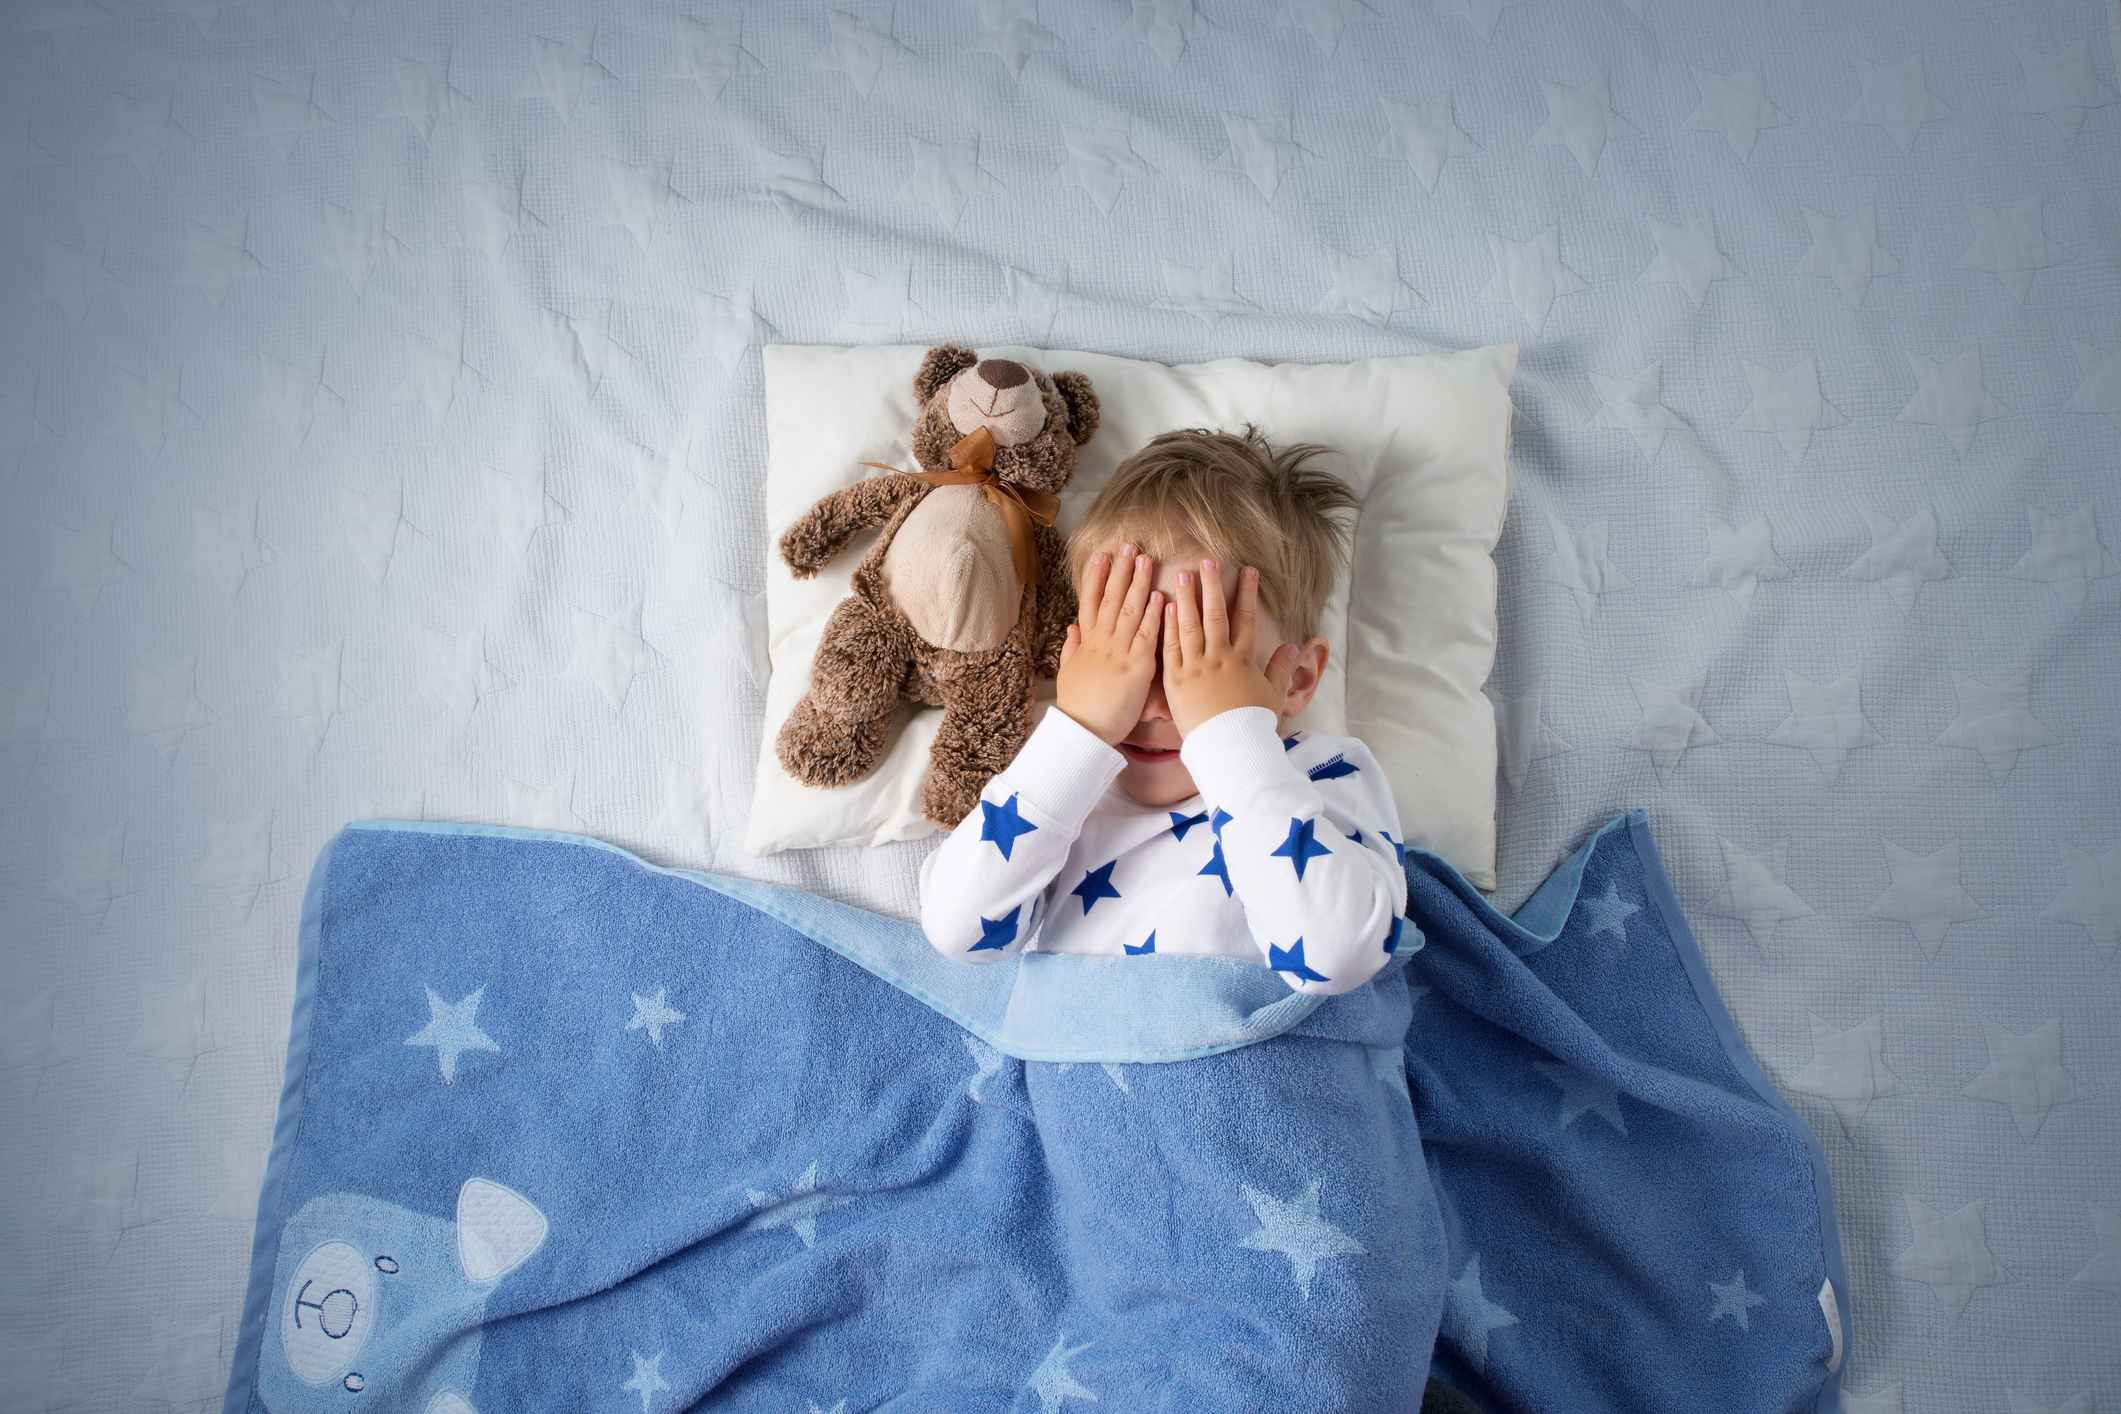 Little boy sleeping with stuffed animal